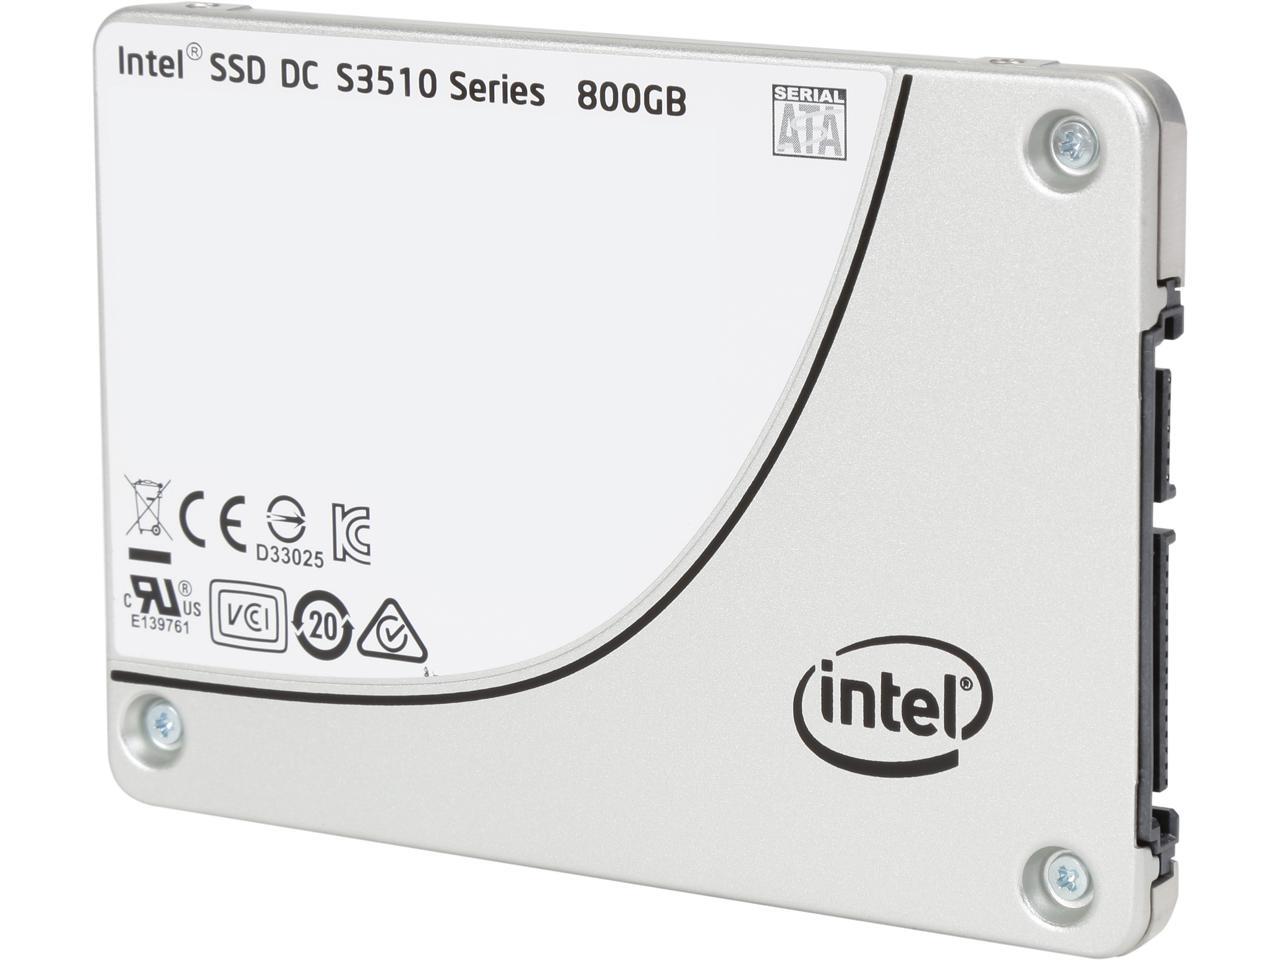 SSD DC s3510 Series. Intel SSD 480gb s3510. 180 ГБ SATA-3 MLC (Opal 2). Intel SSD Server Series. Intel series гб